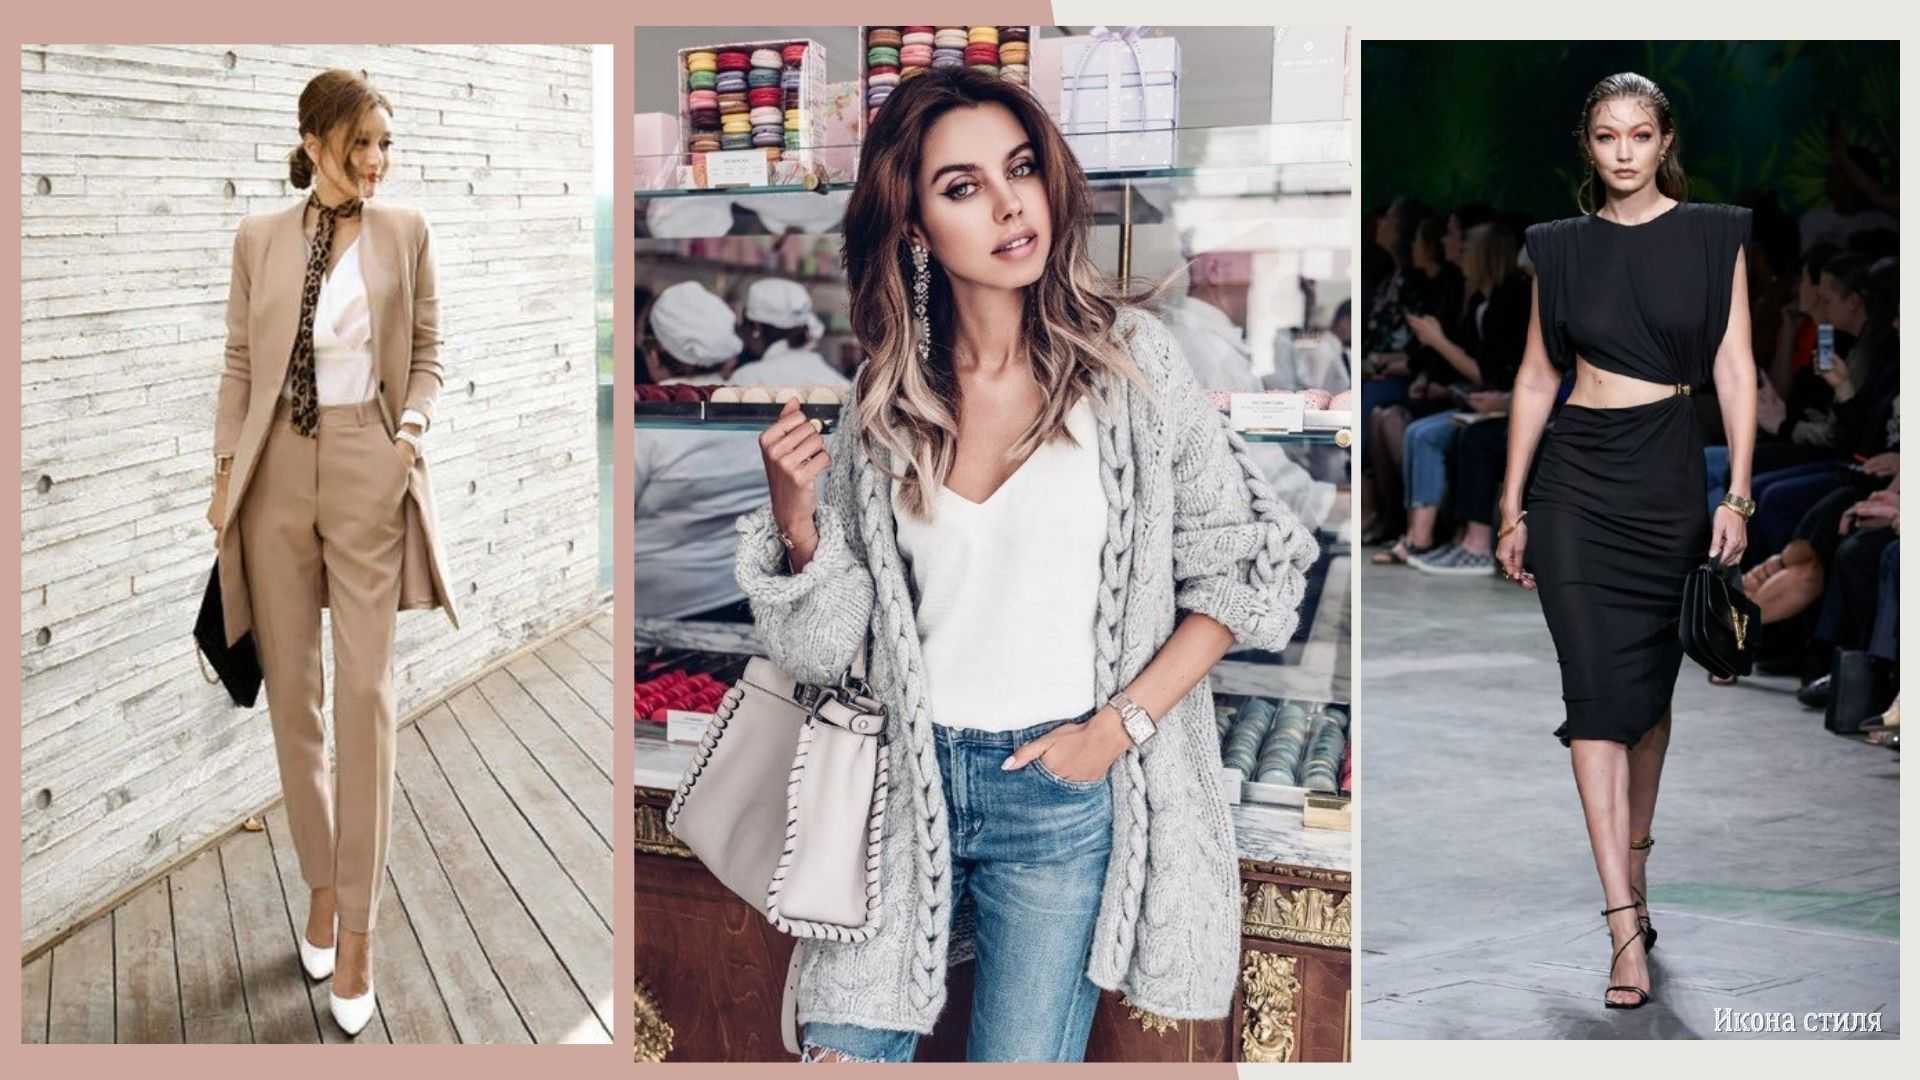 Модные тенденции в одежде 2019-2020 + фото стильных образов